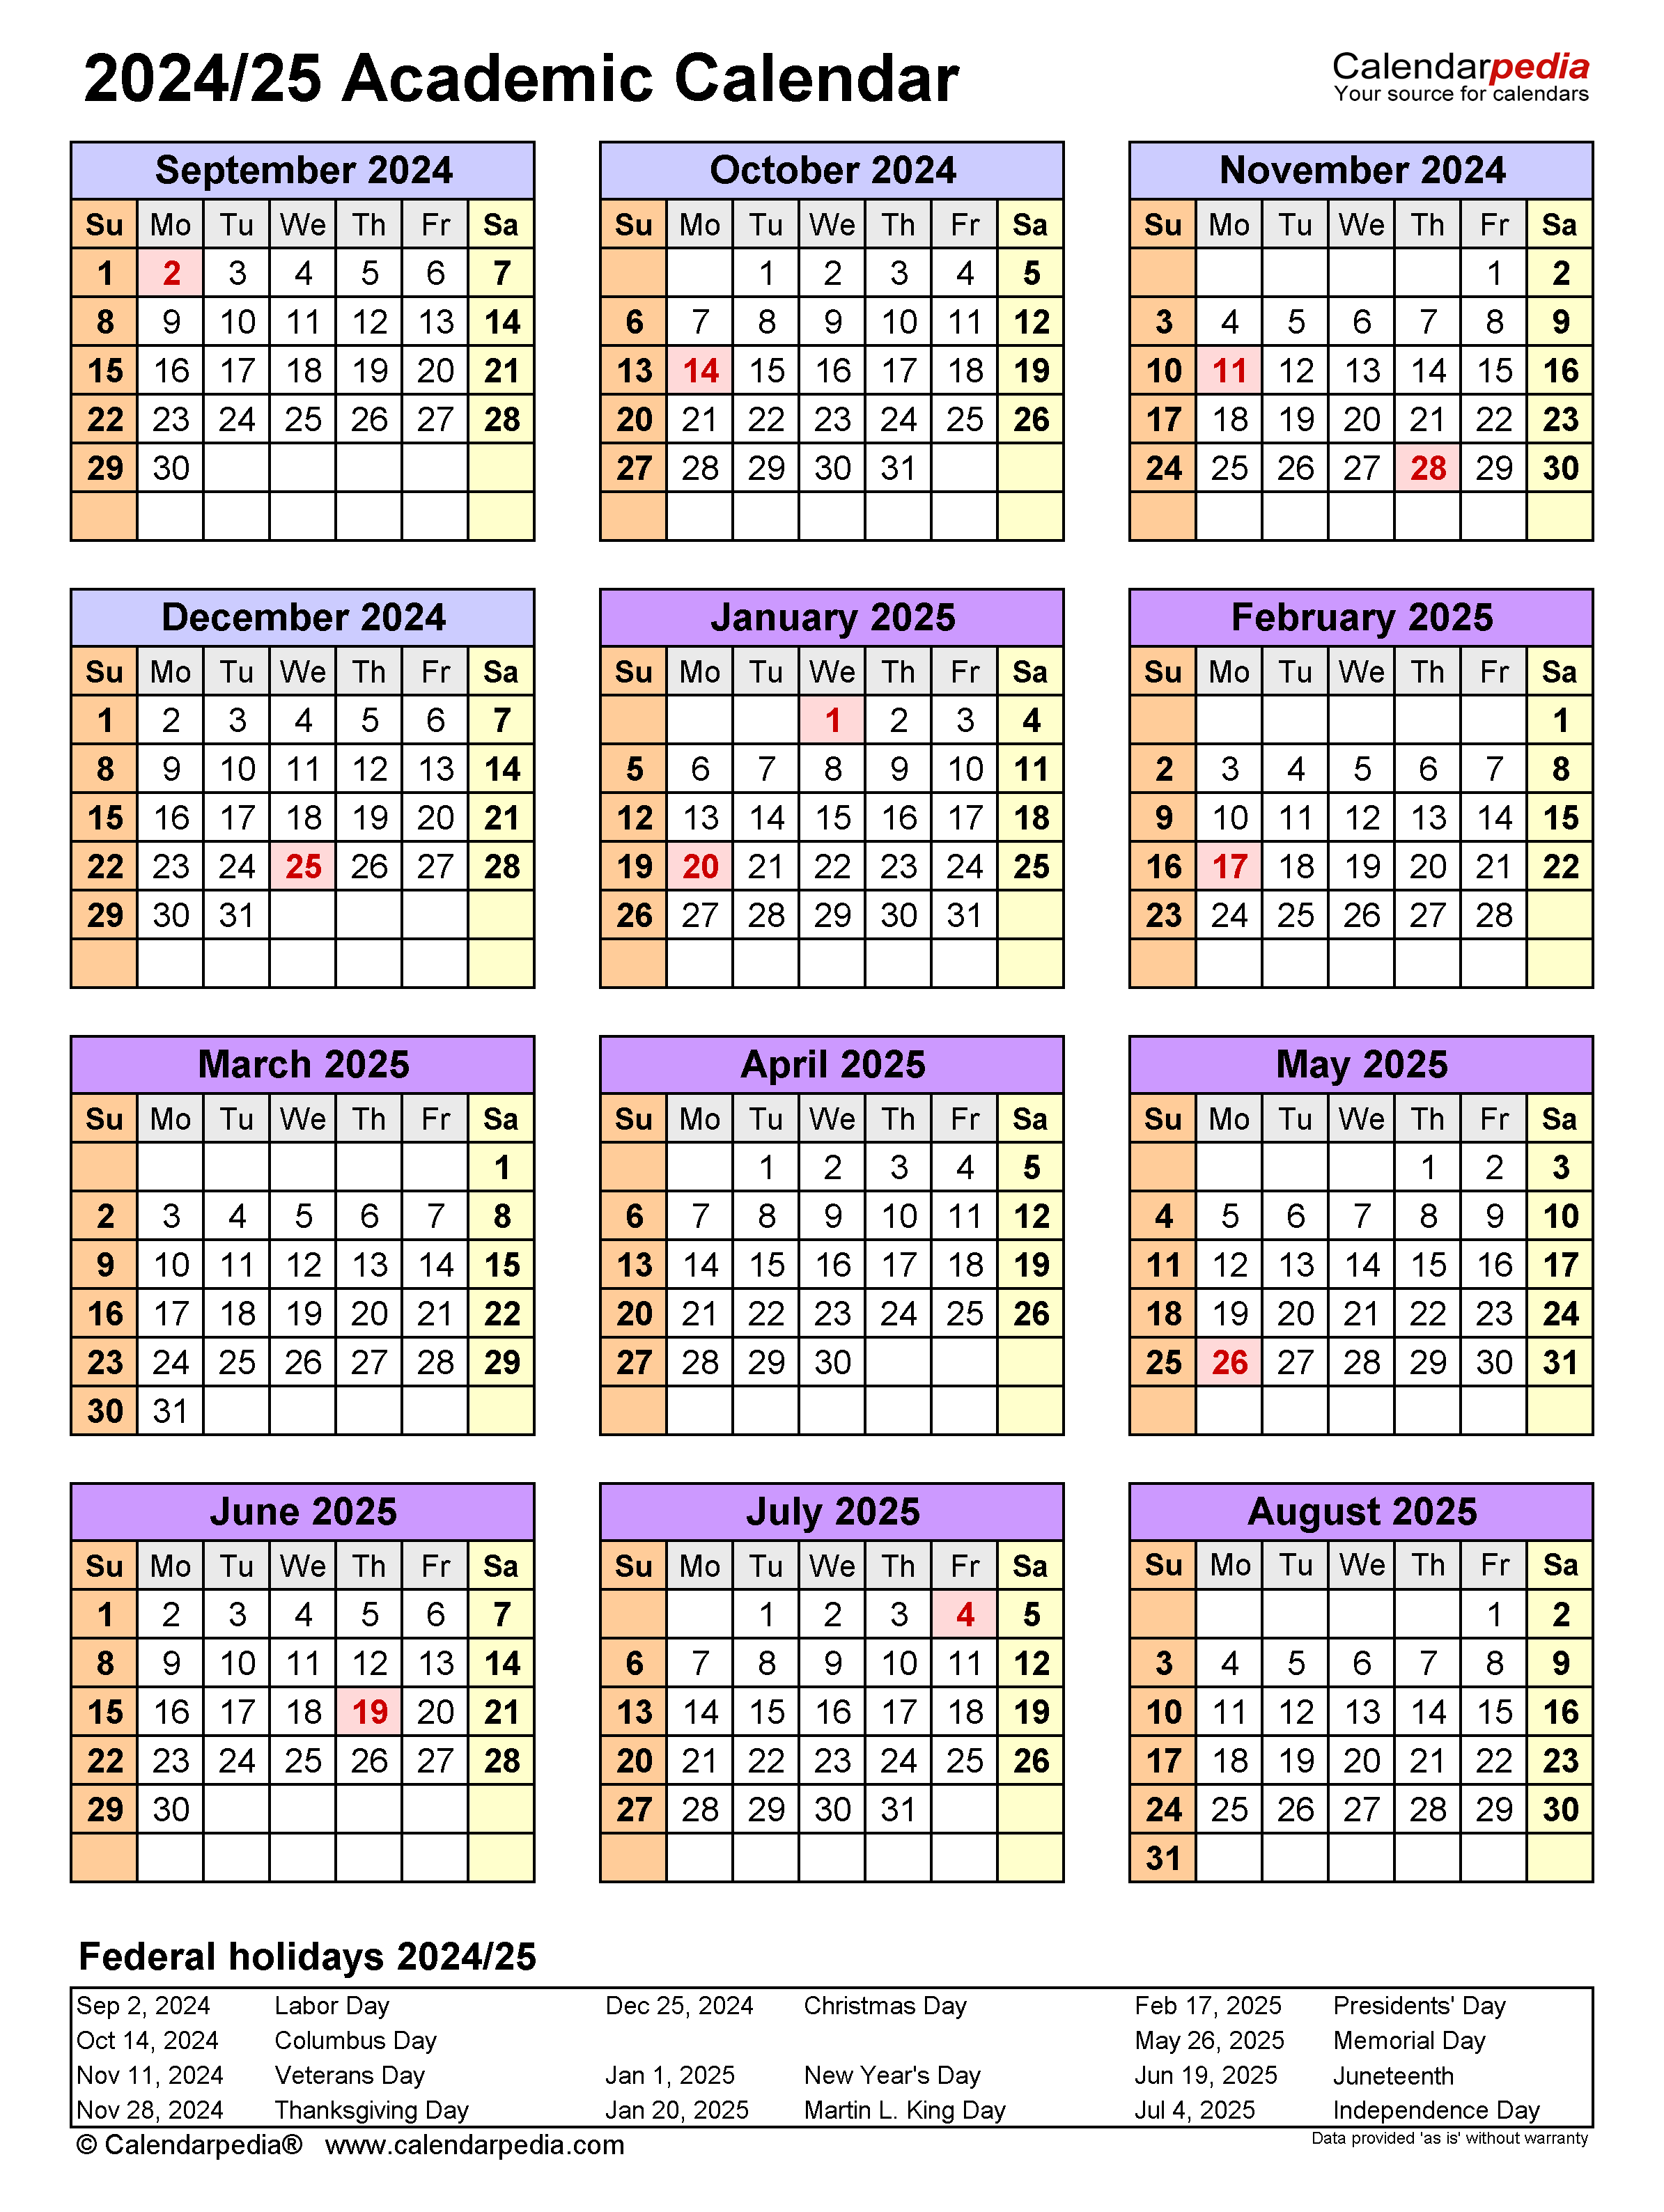 BGSU Academic Calendar 2024 A Comprehensive Guide 2024 Calendar